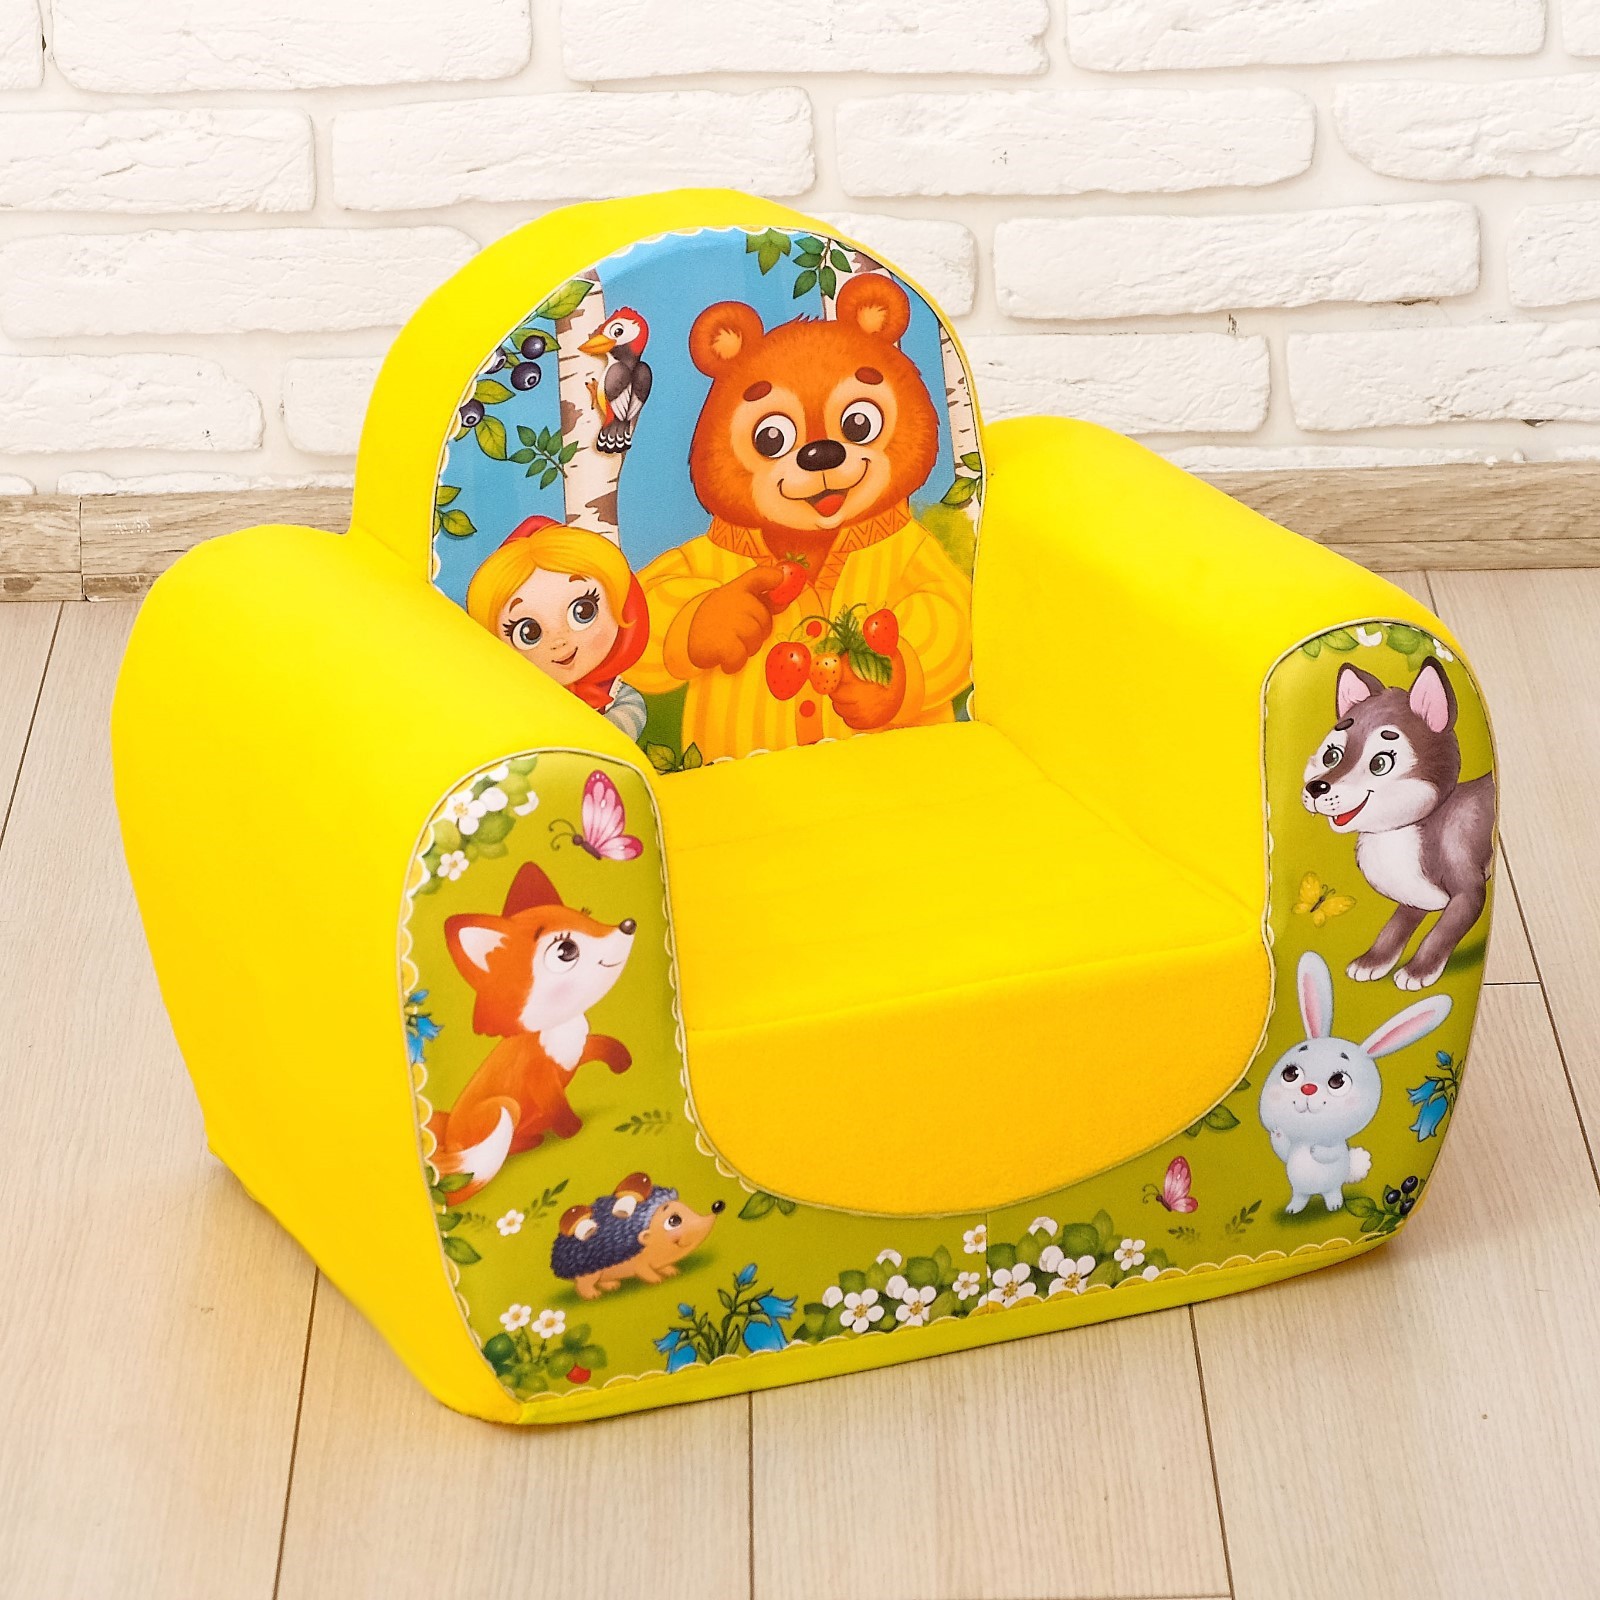 мягкое кресло игрушка для ребенка